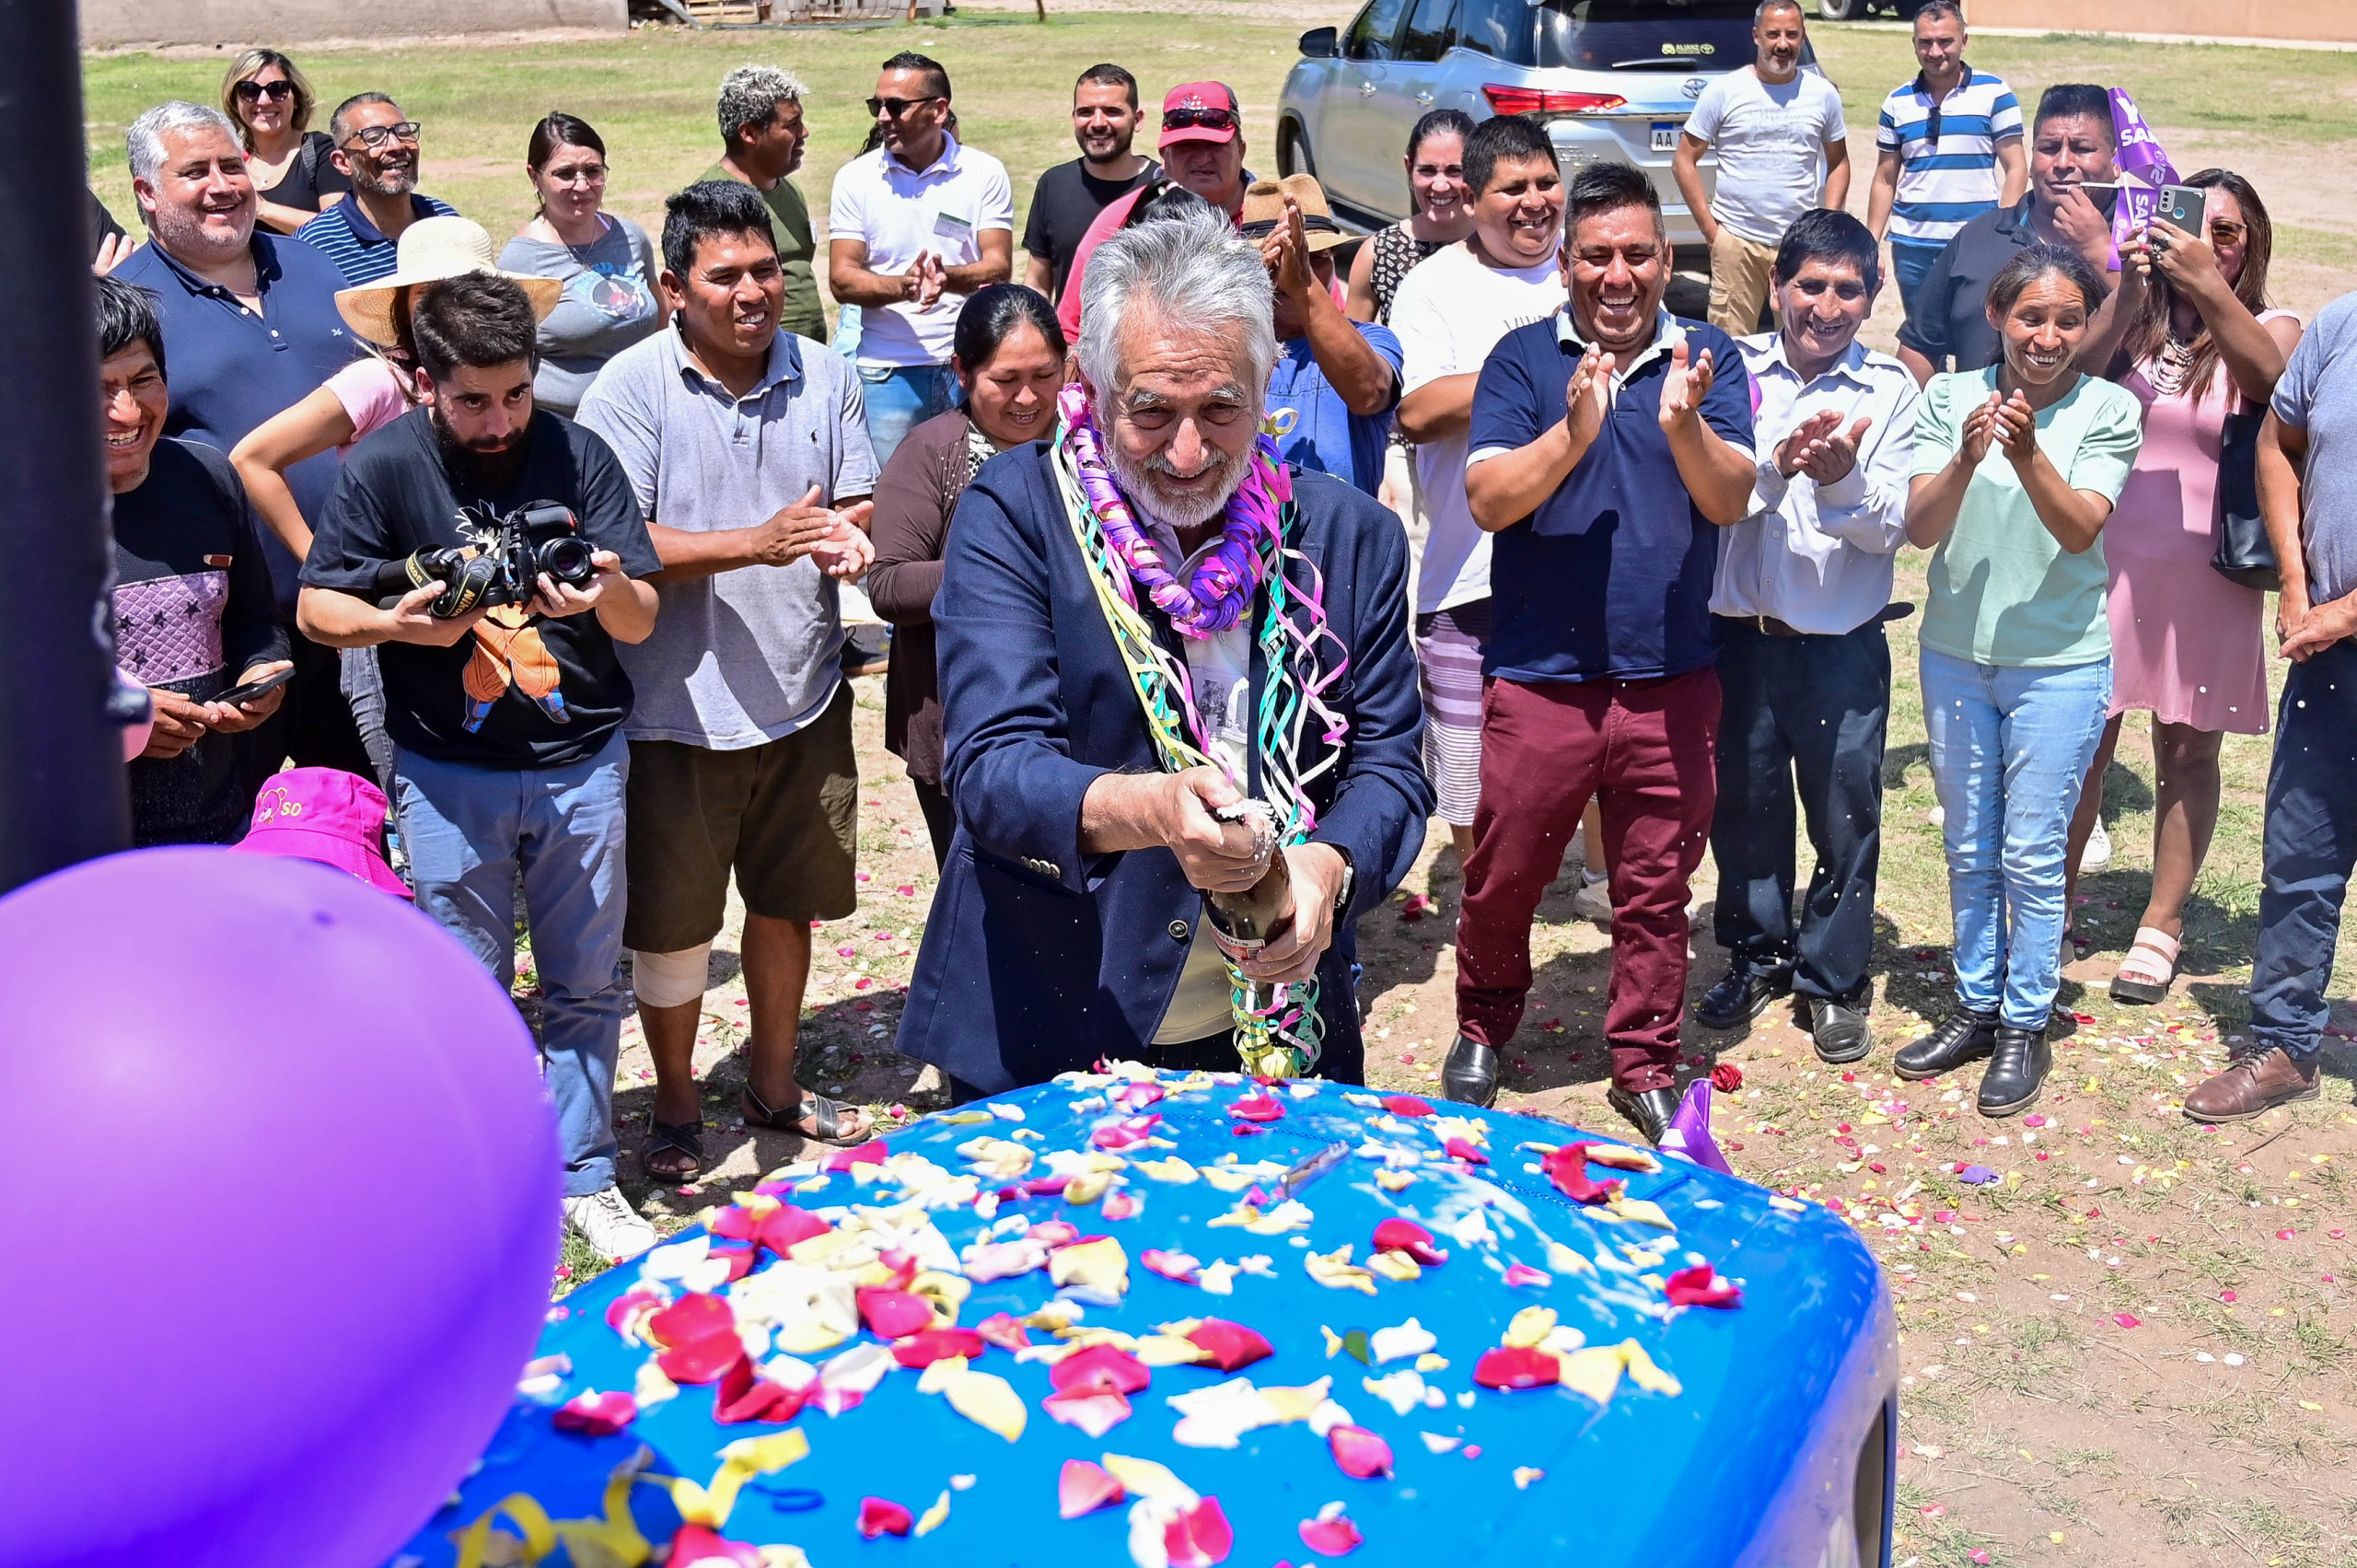 El gobernador entregó un tractor e inauguró una plaza en el predio de la comunidad boliviana